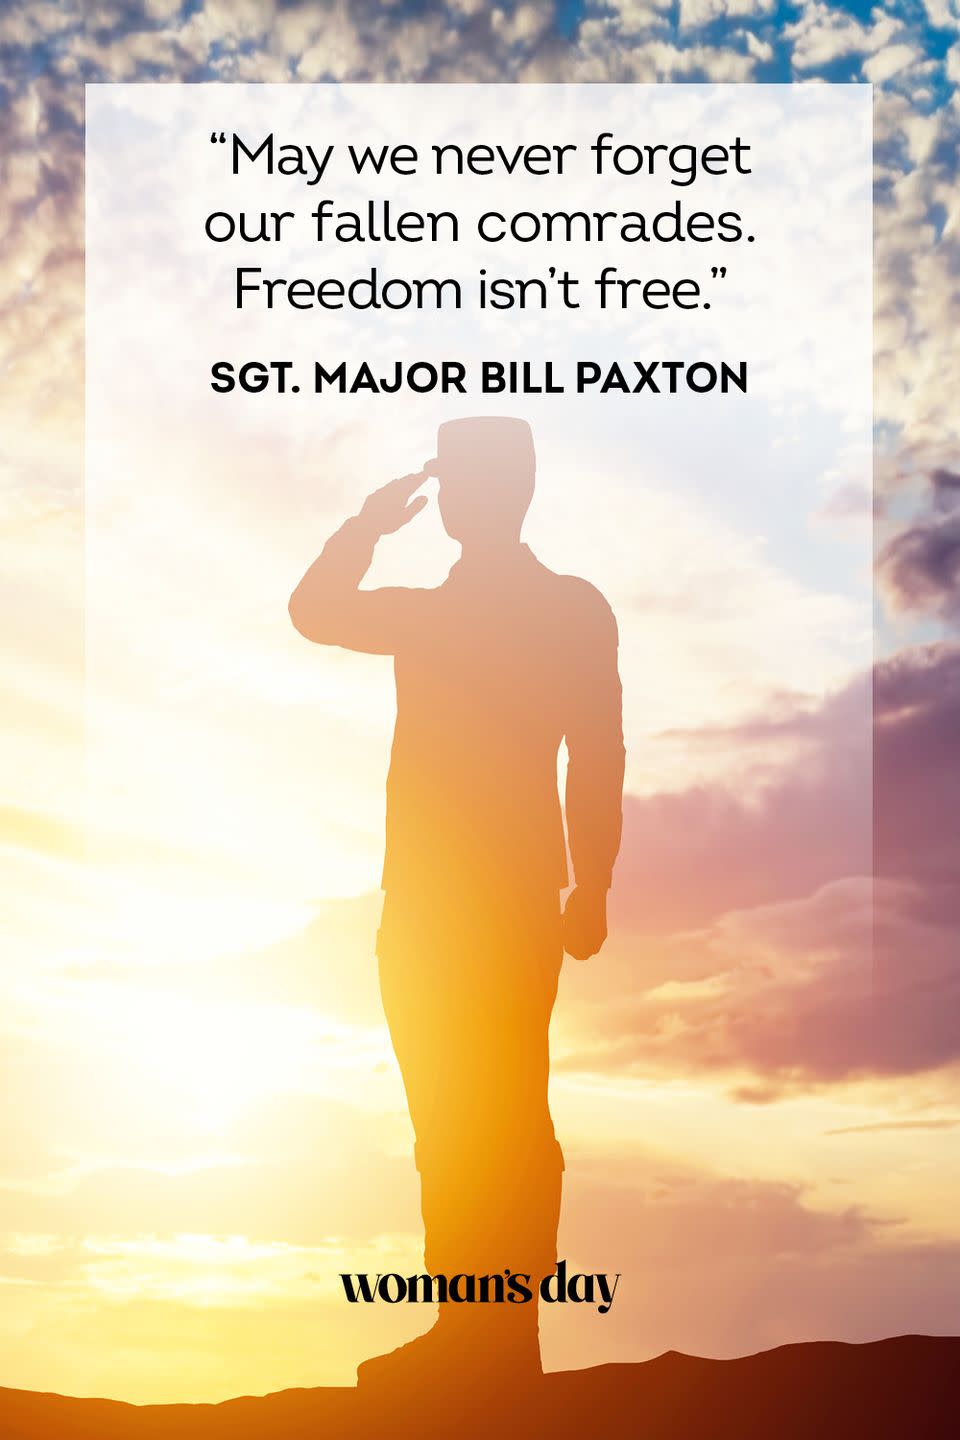 31) Sgt. Major Bill Paxton